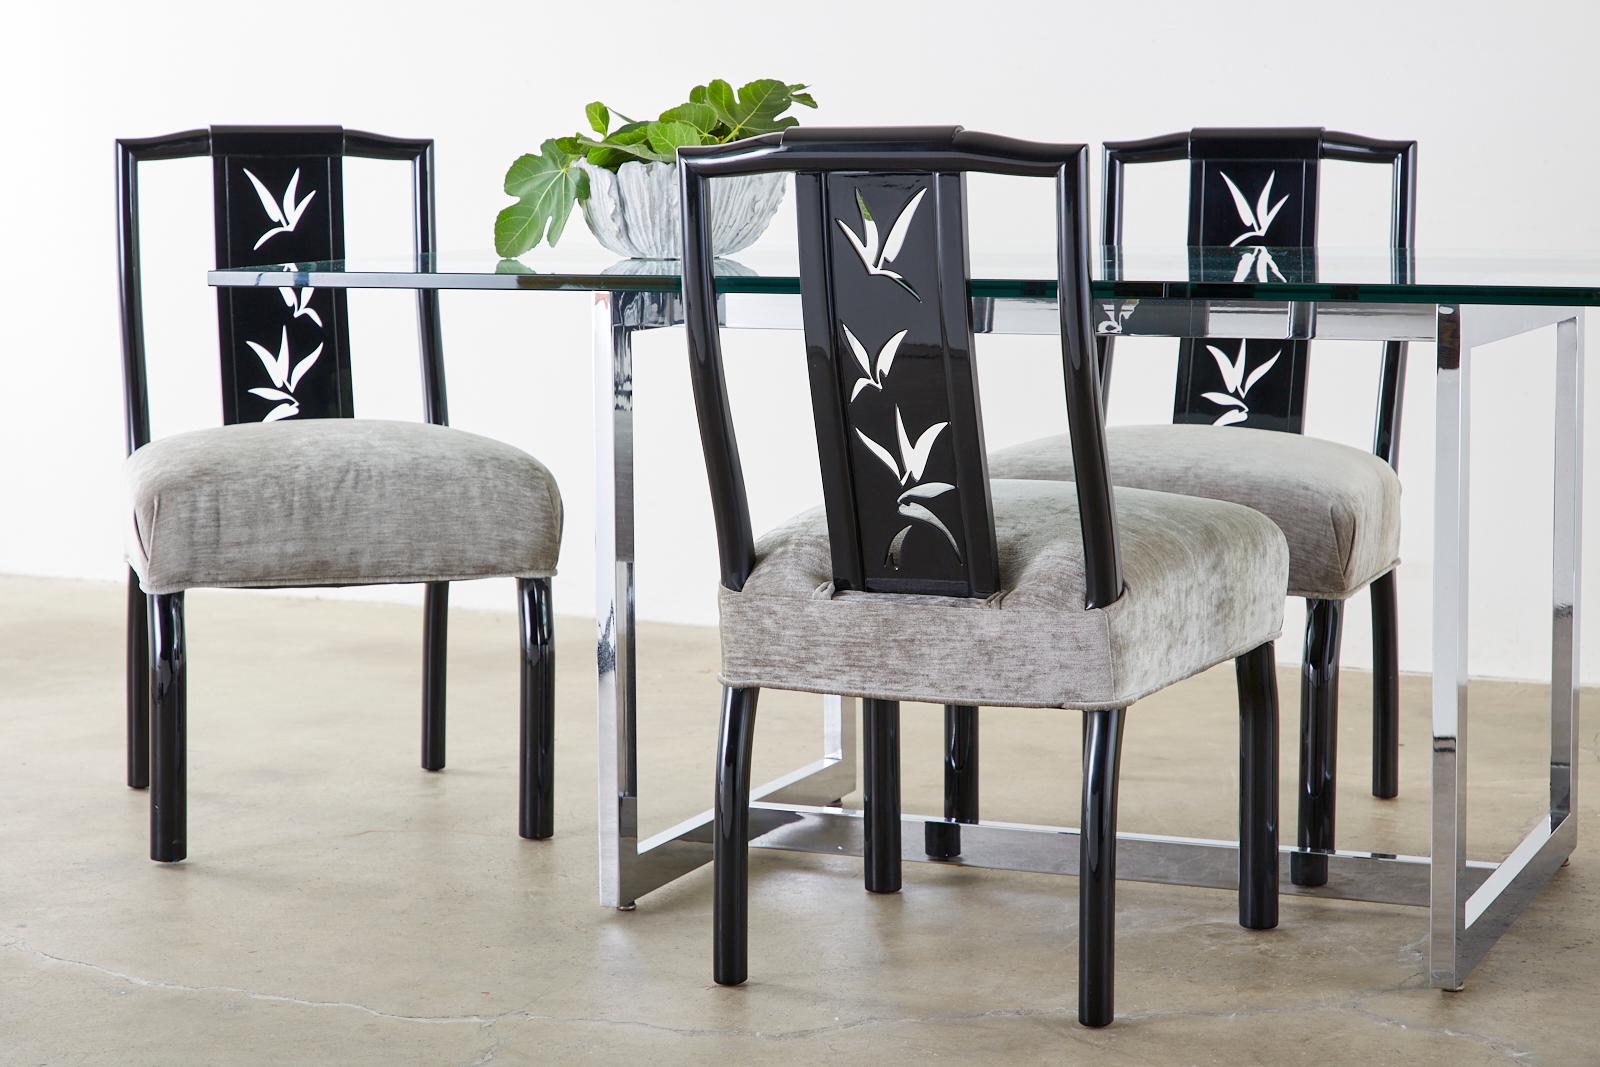 Prächtiger Satz von acht schwarz lackierten Mid-Century Modern Esszimmerstühlen, entworfen von James Mont. Die Stühle verfügen über eine mit asiatischen Blättern verzierte Rückenlehne und eine dramatische Hochglanzlackierung. Die Rahmen sind aus